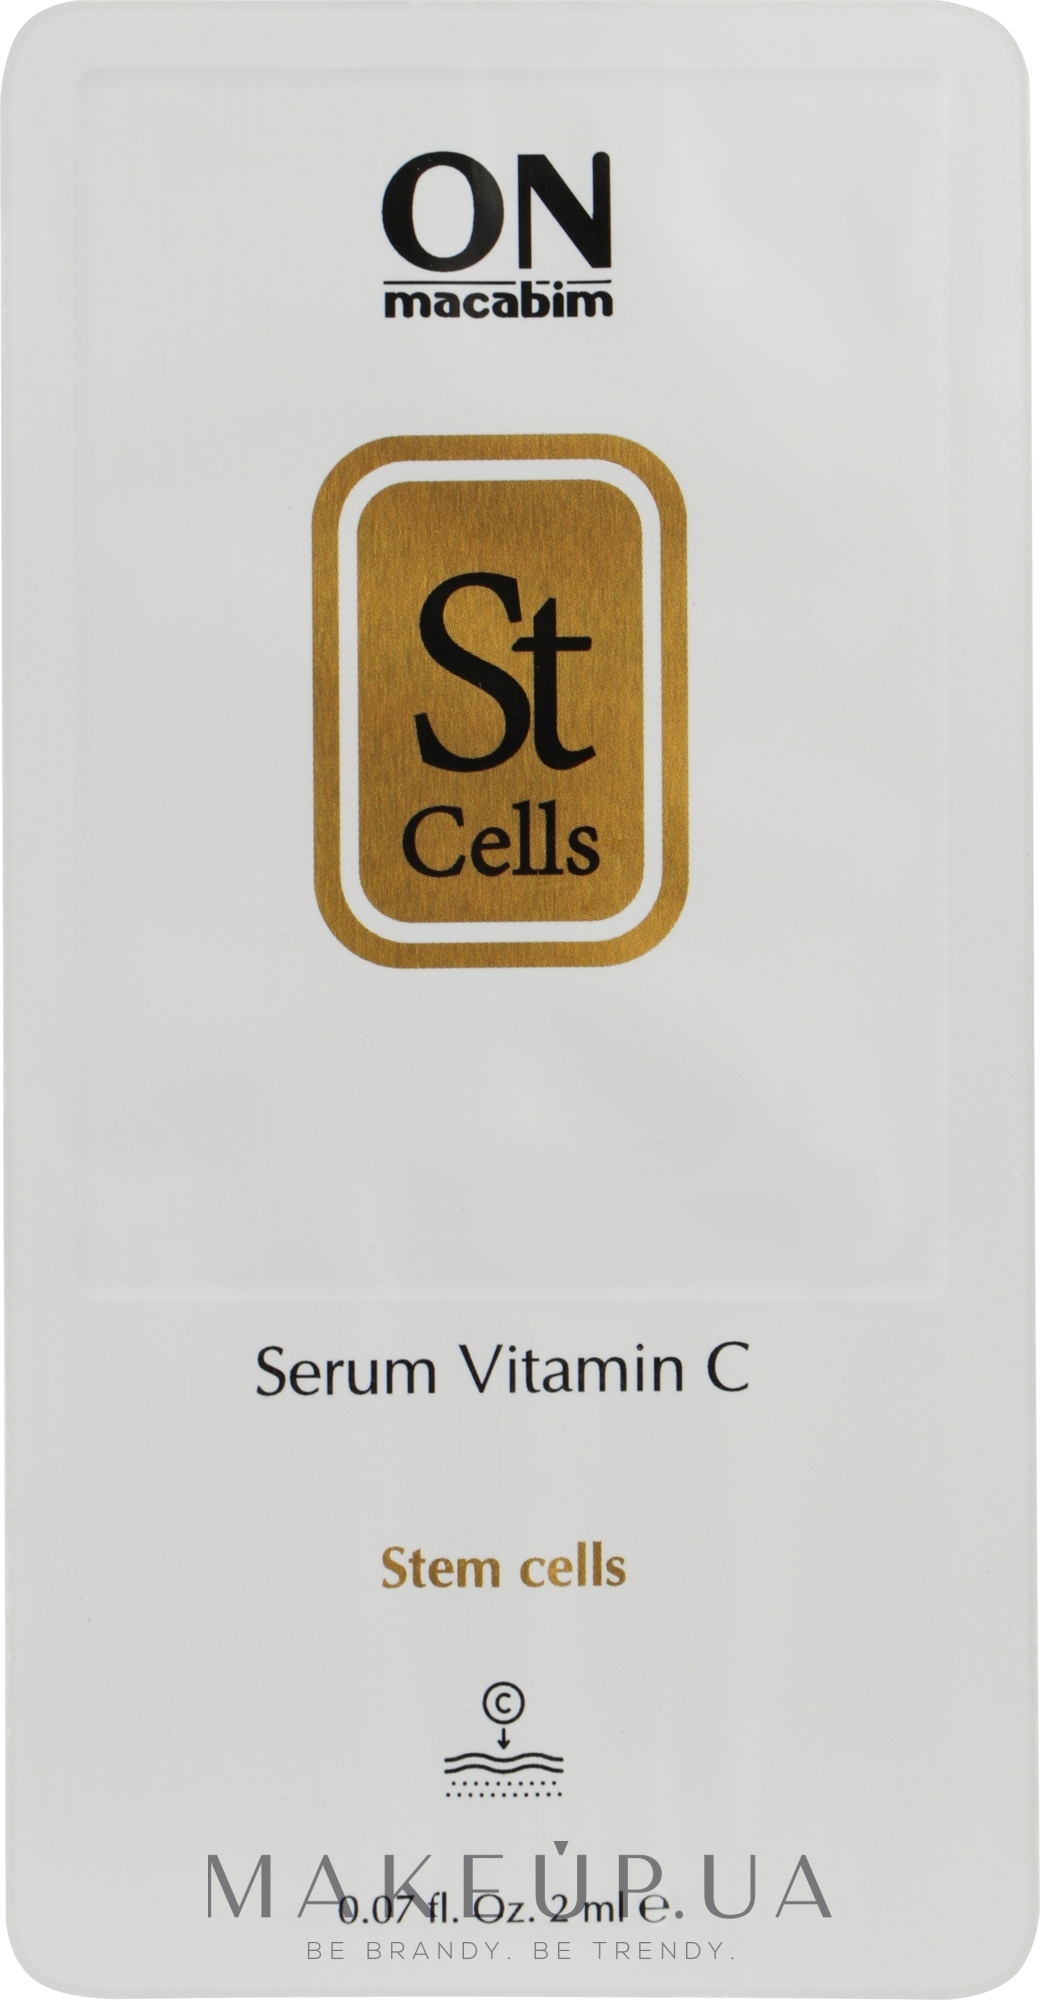 Сыворотка со стволовыми клетками и витамином C - Onmacabim St Cells Serum Vitamin C (пробник) — фото 2ml